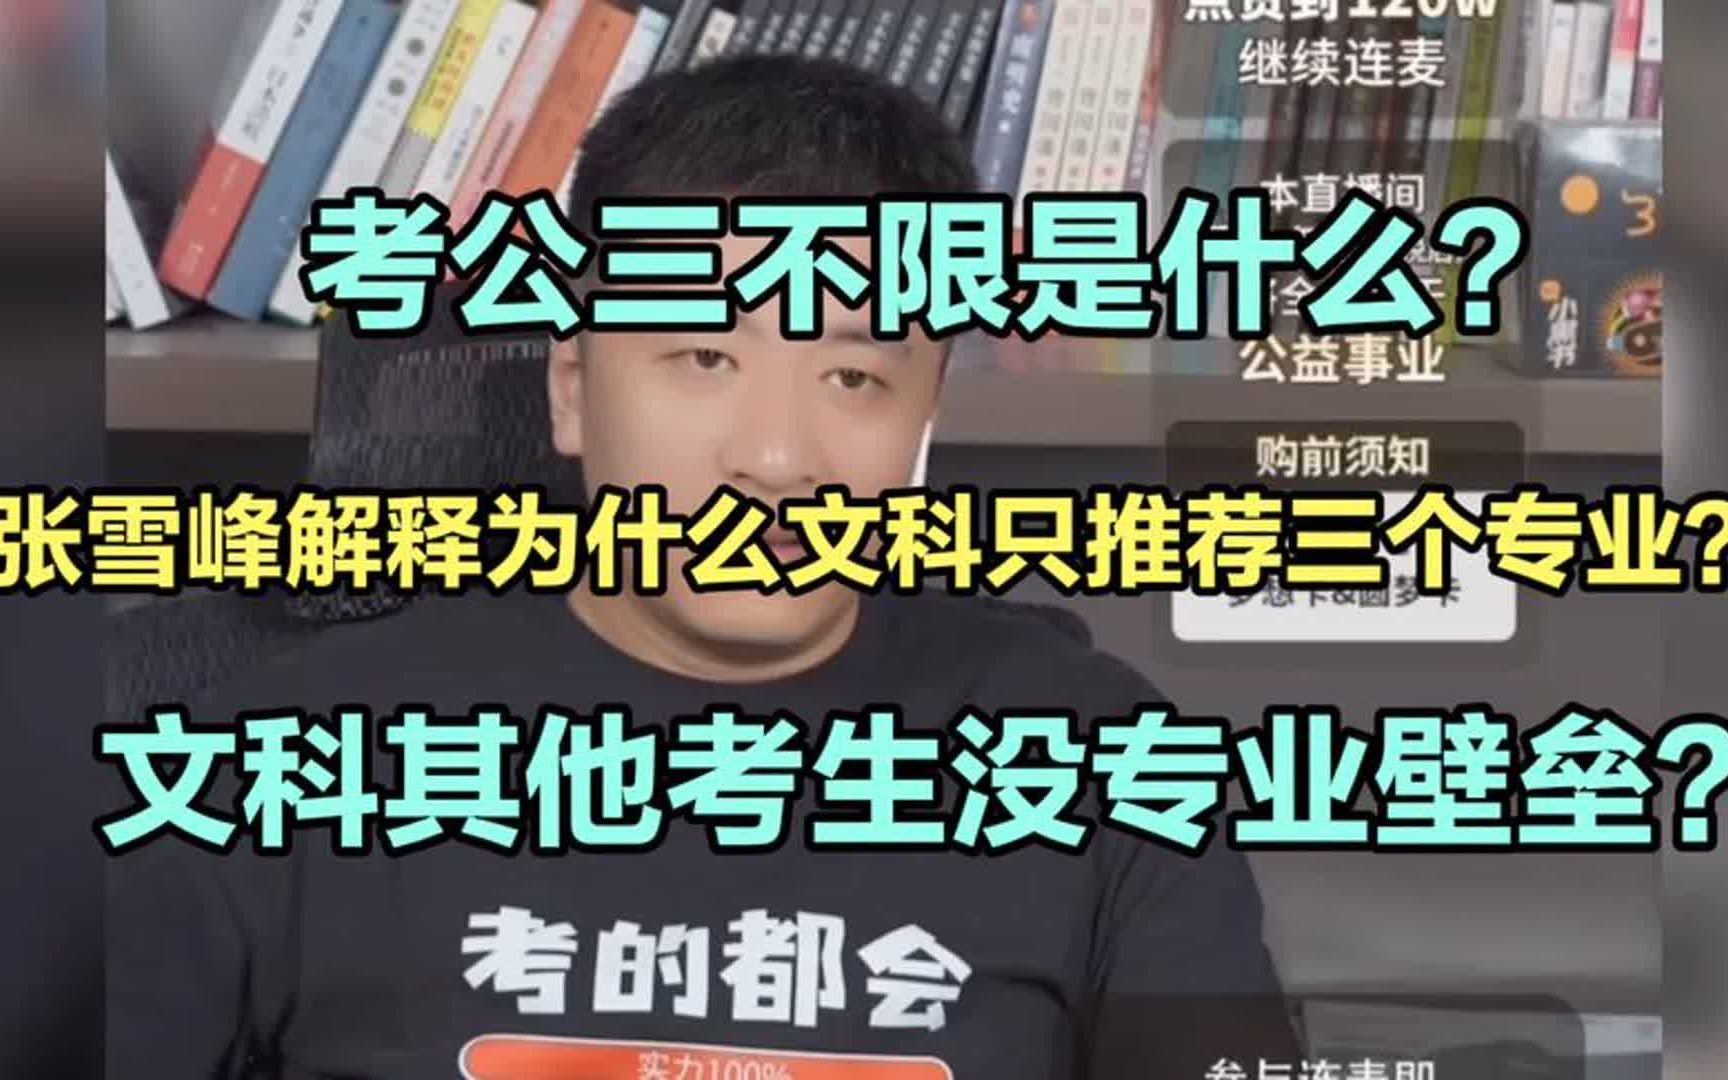 张雪峰老师在线解释为什么文科只推荐法学、财会、汉语言三个专业